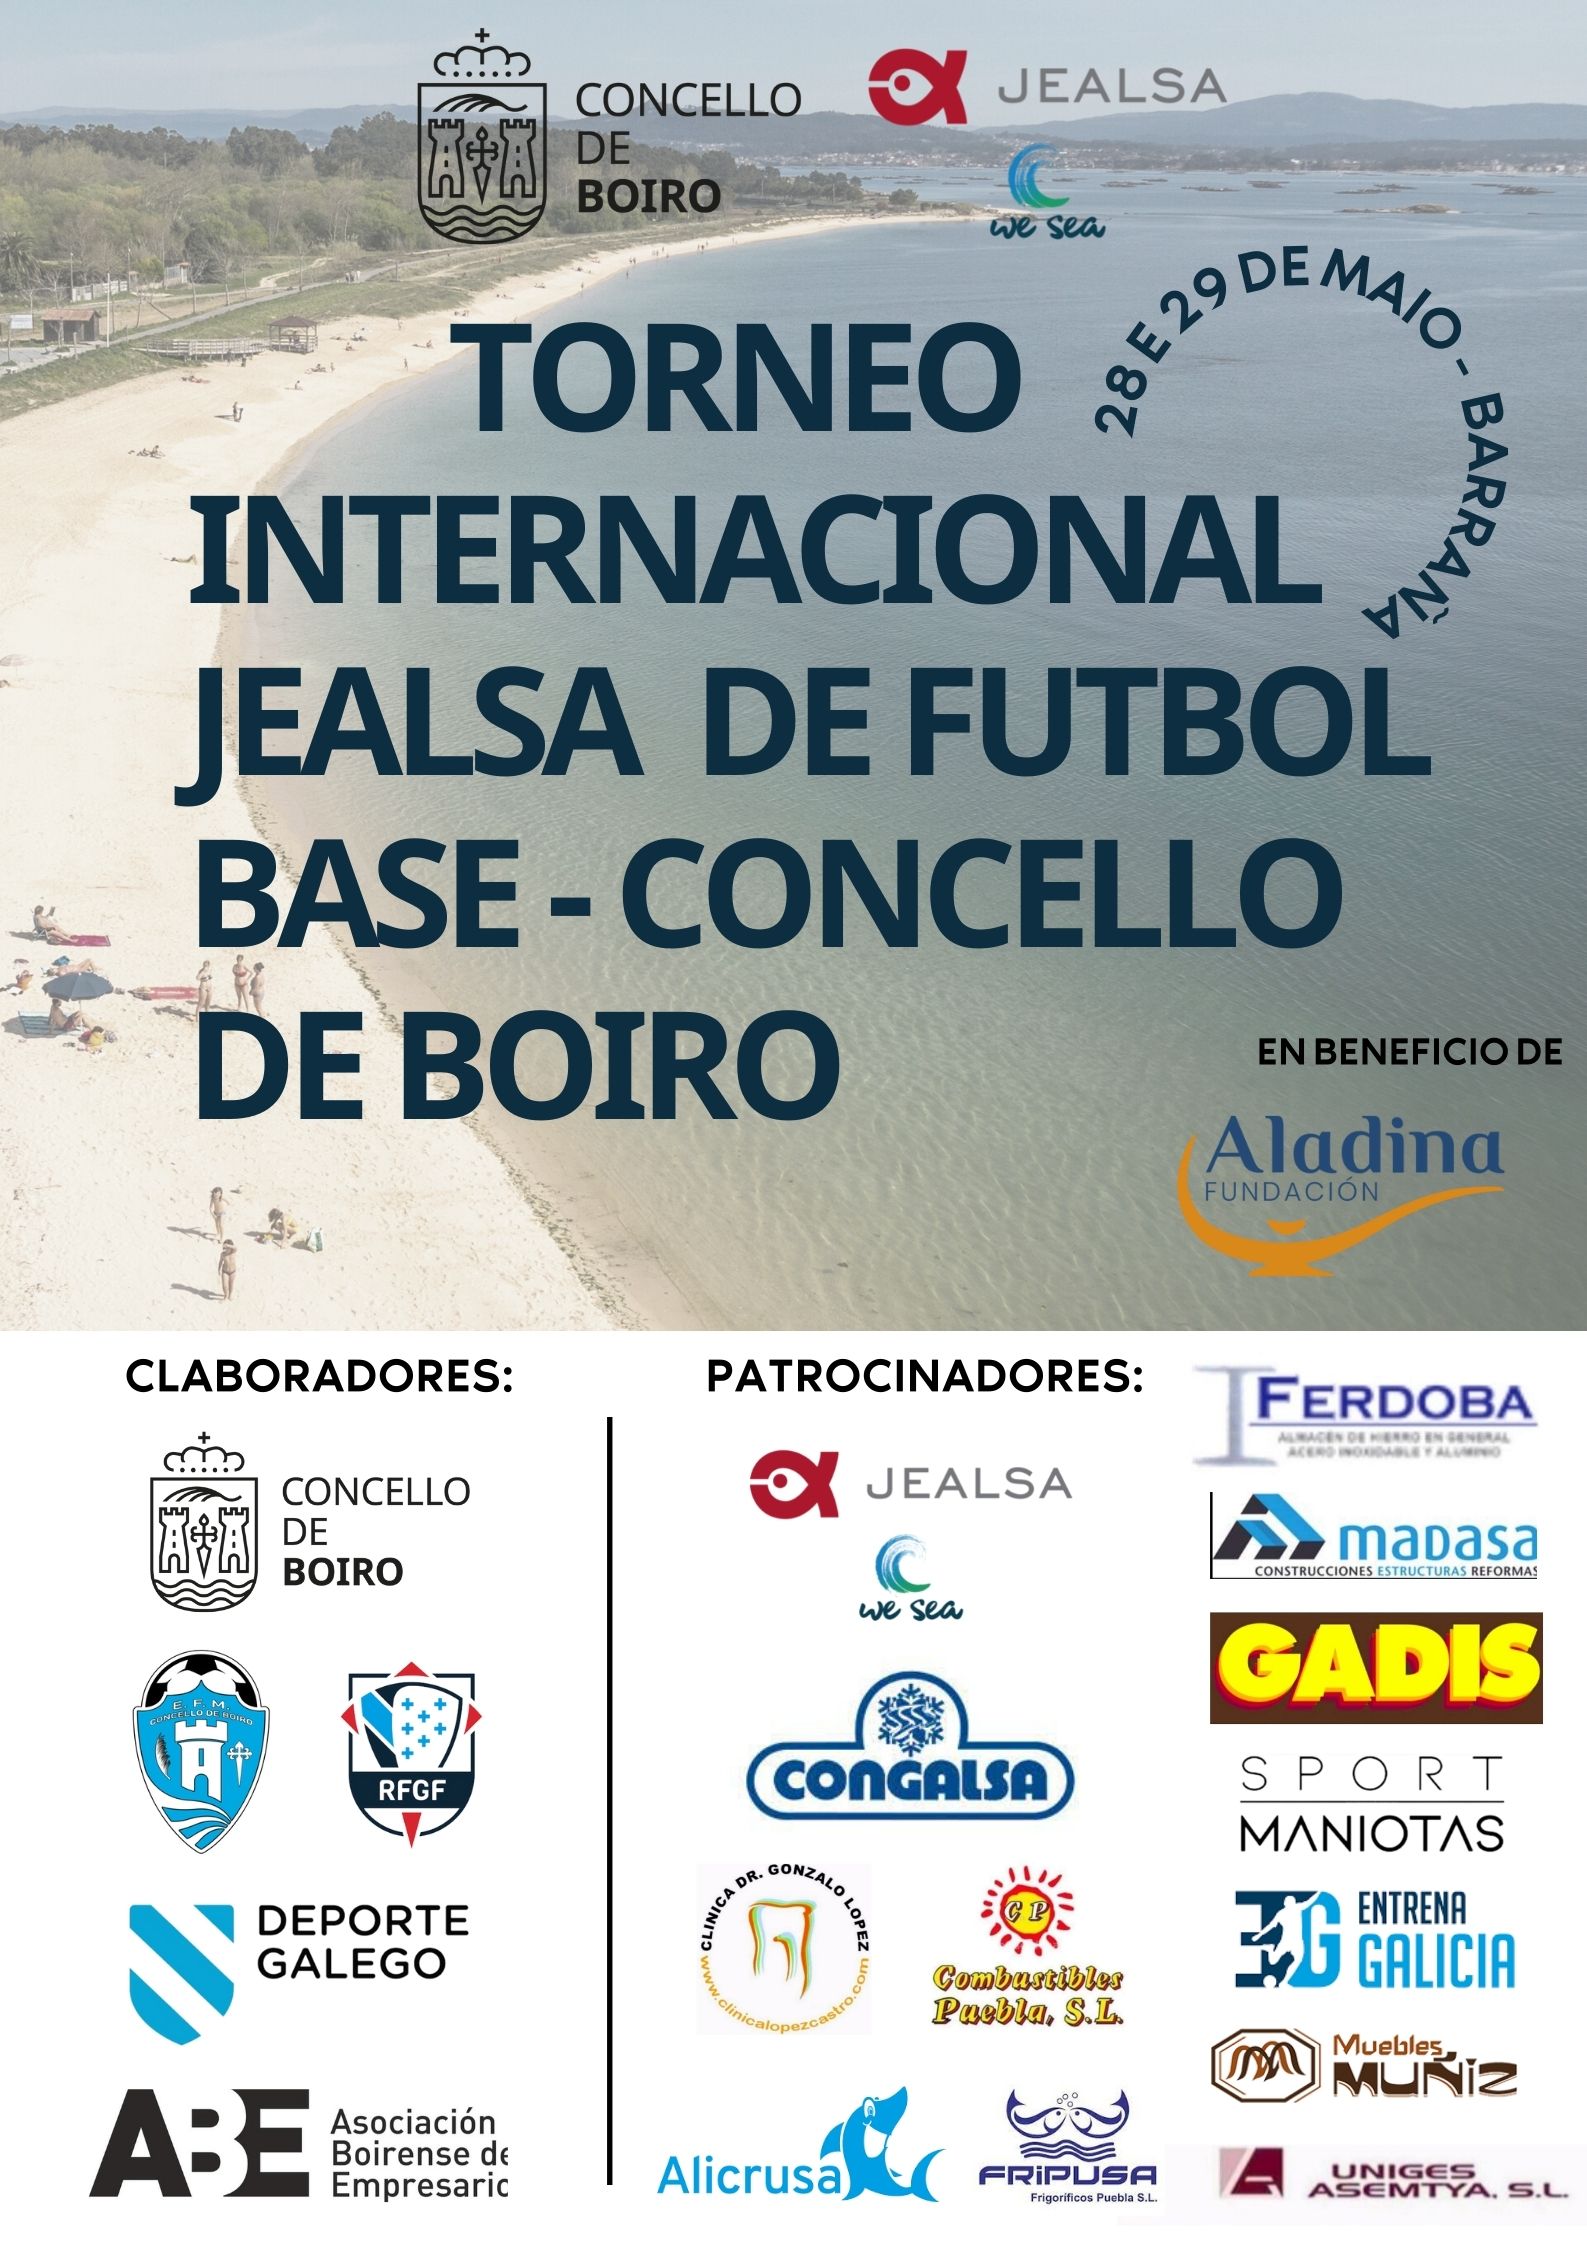 Torneo Internacional Jealsa de futbol base - Concello de Boiro 